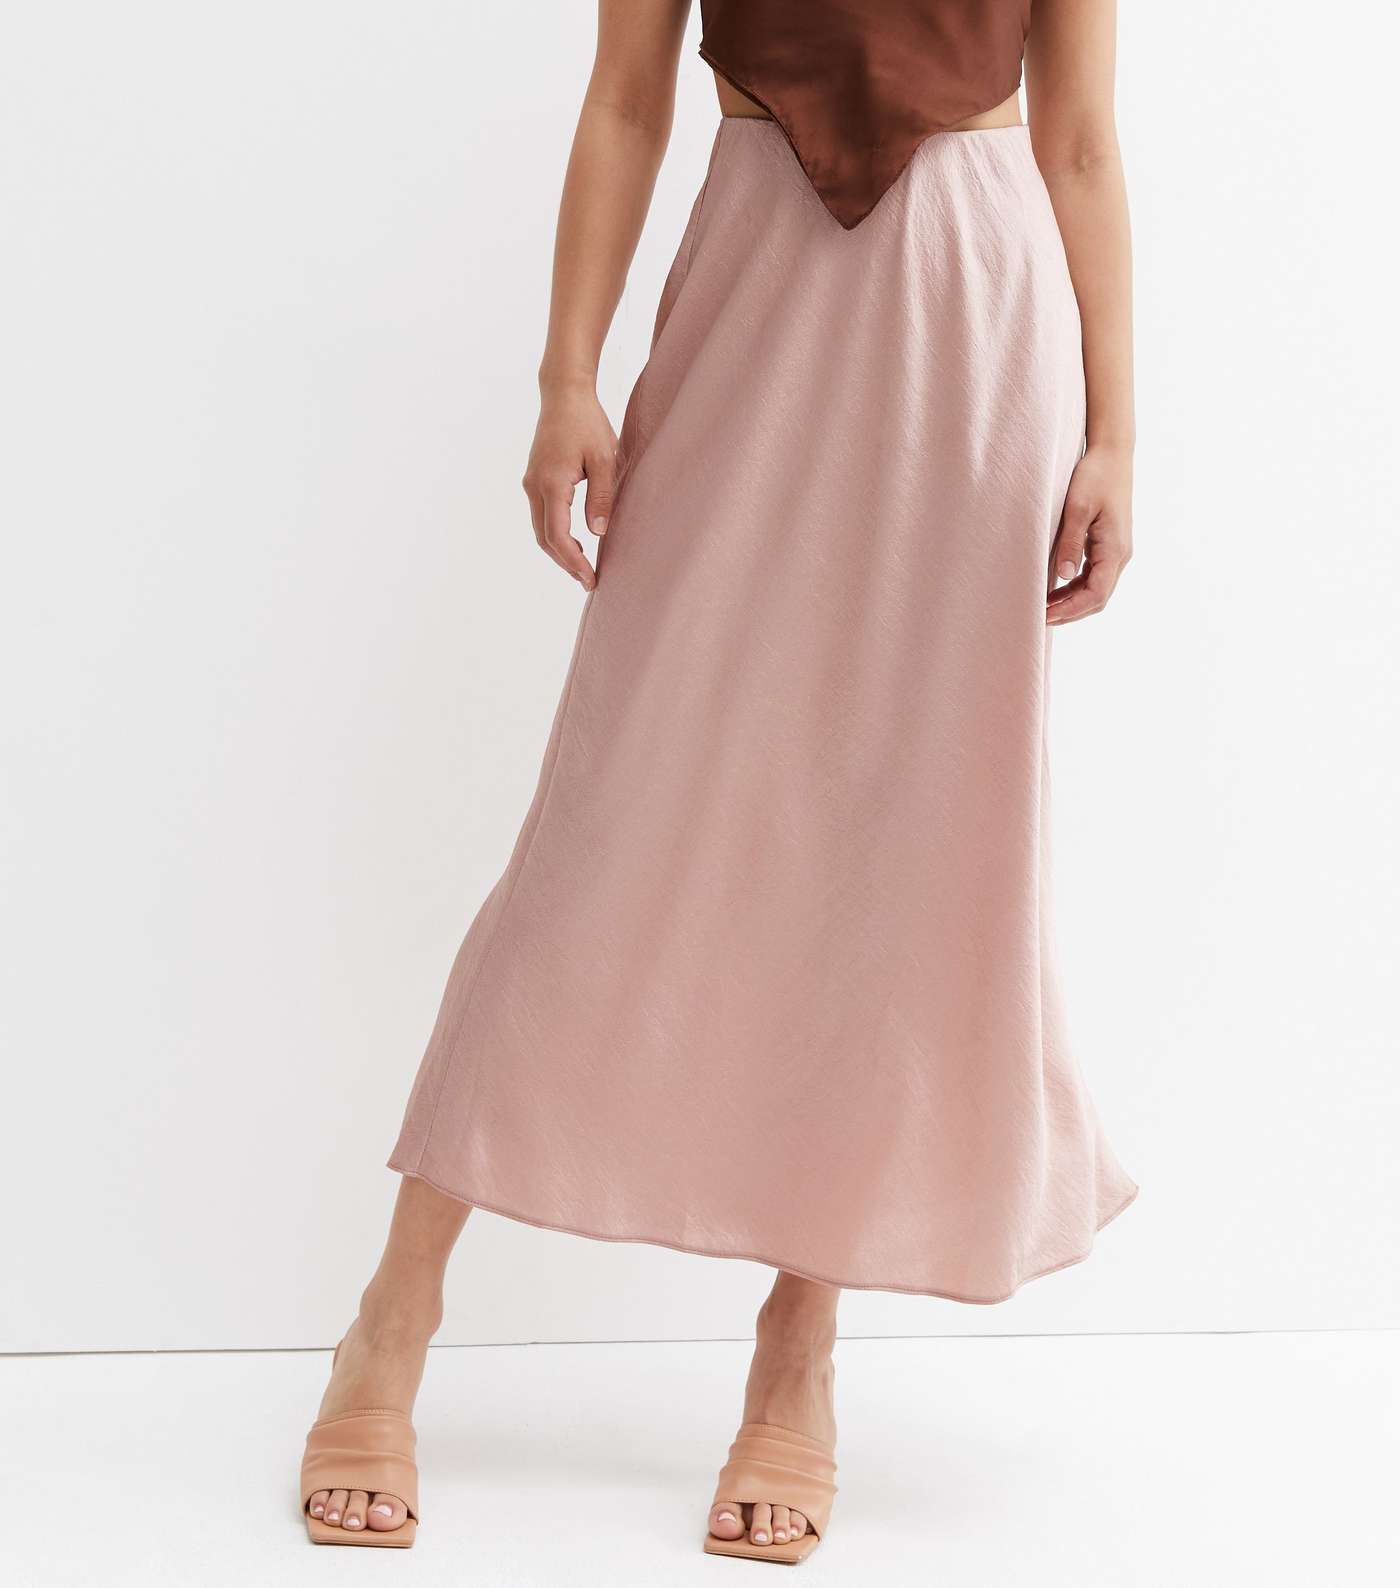 Pale Pink Satin Bias Cut Midi Skirt Image 2